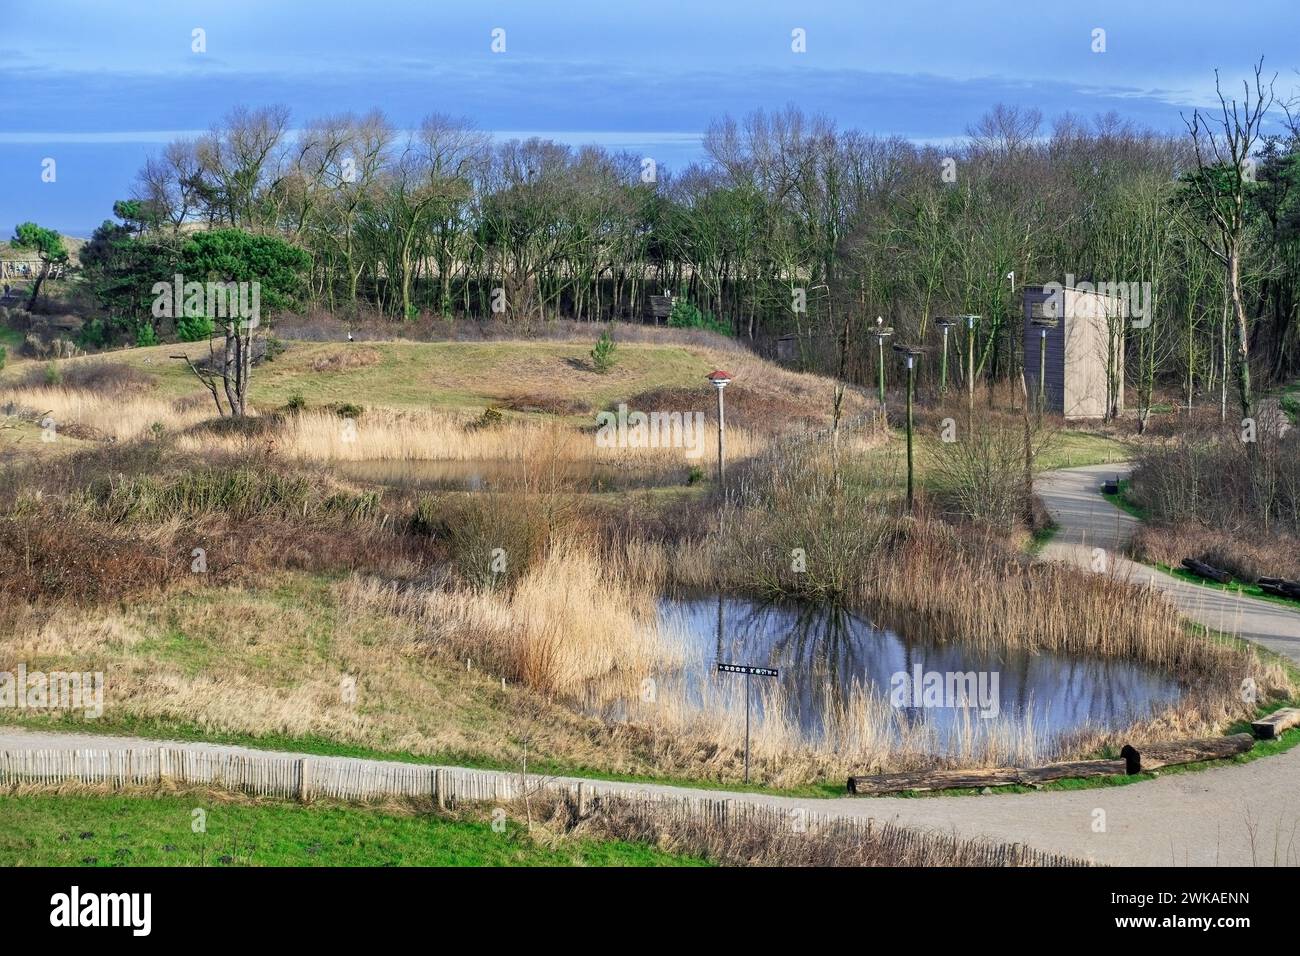 Vue sur le parc naturel de Zwin, sanctuaire d'oiseaux à Knokke-Heist et cachette d'oiseaux pour observer les cigognes blanches à la fin de l'hiver, Flandre occidentale, Belgique Banque D'Images